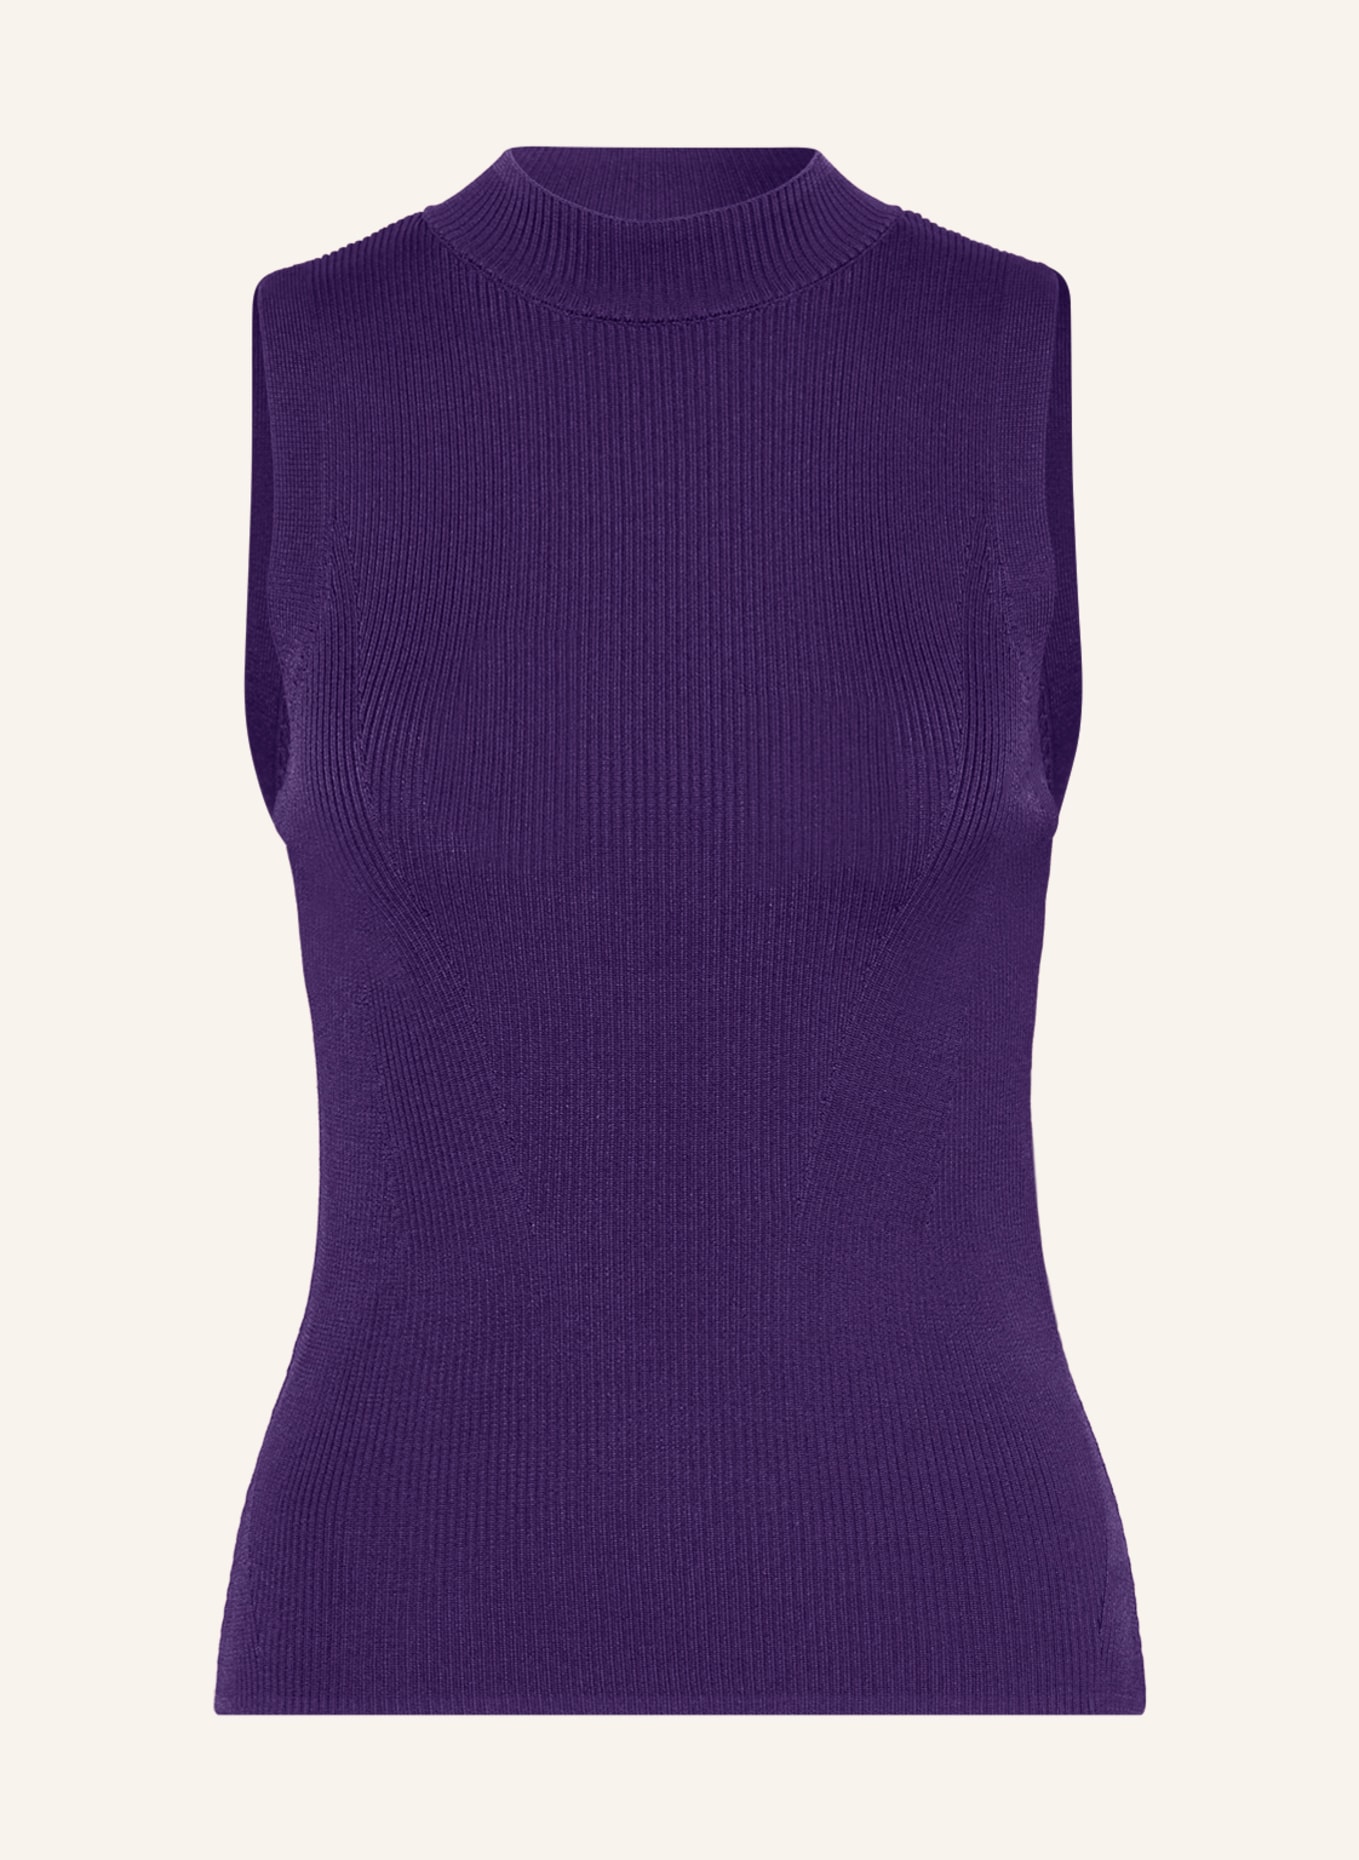 comma Knit top, Color: PURPLE (Image 1)